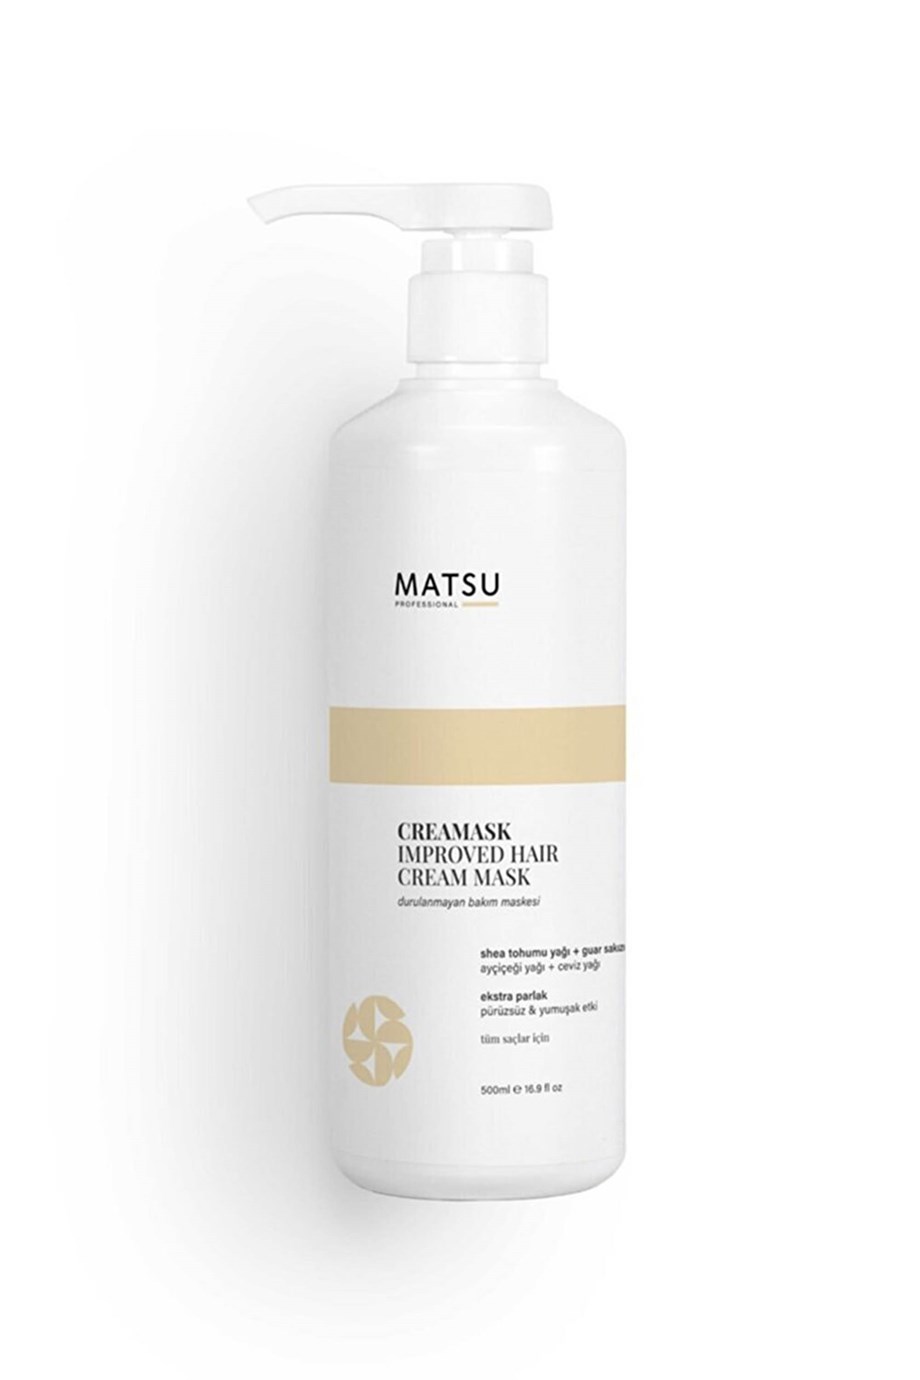 MATSU Creamask Improved Hair Cream Durulanmayan Krem Maske 500 ml